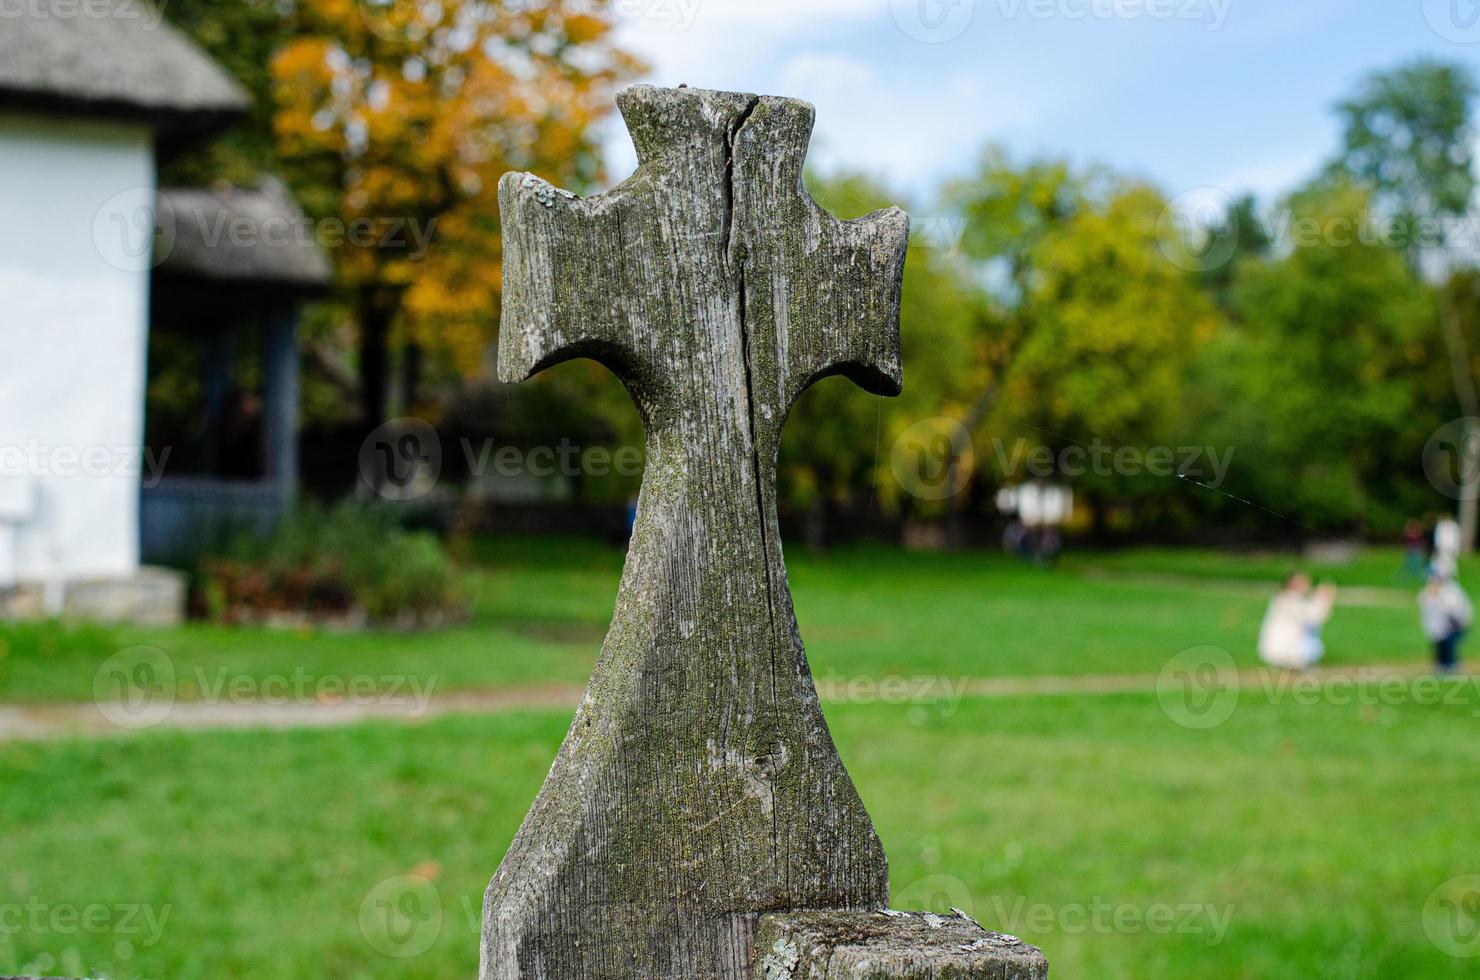 cruz de madeira antiga na cerca foto